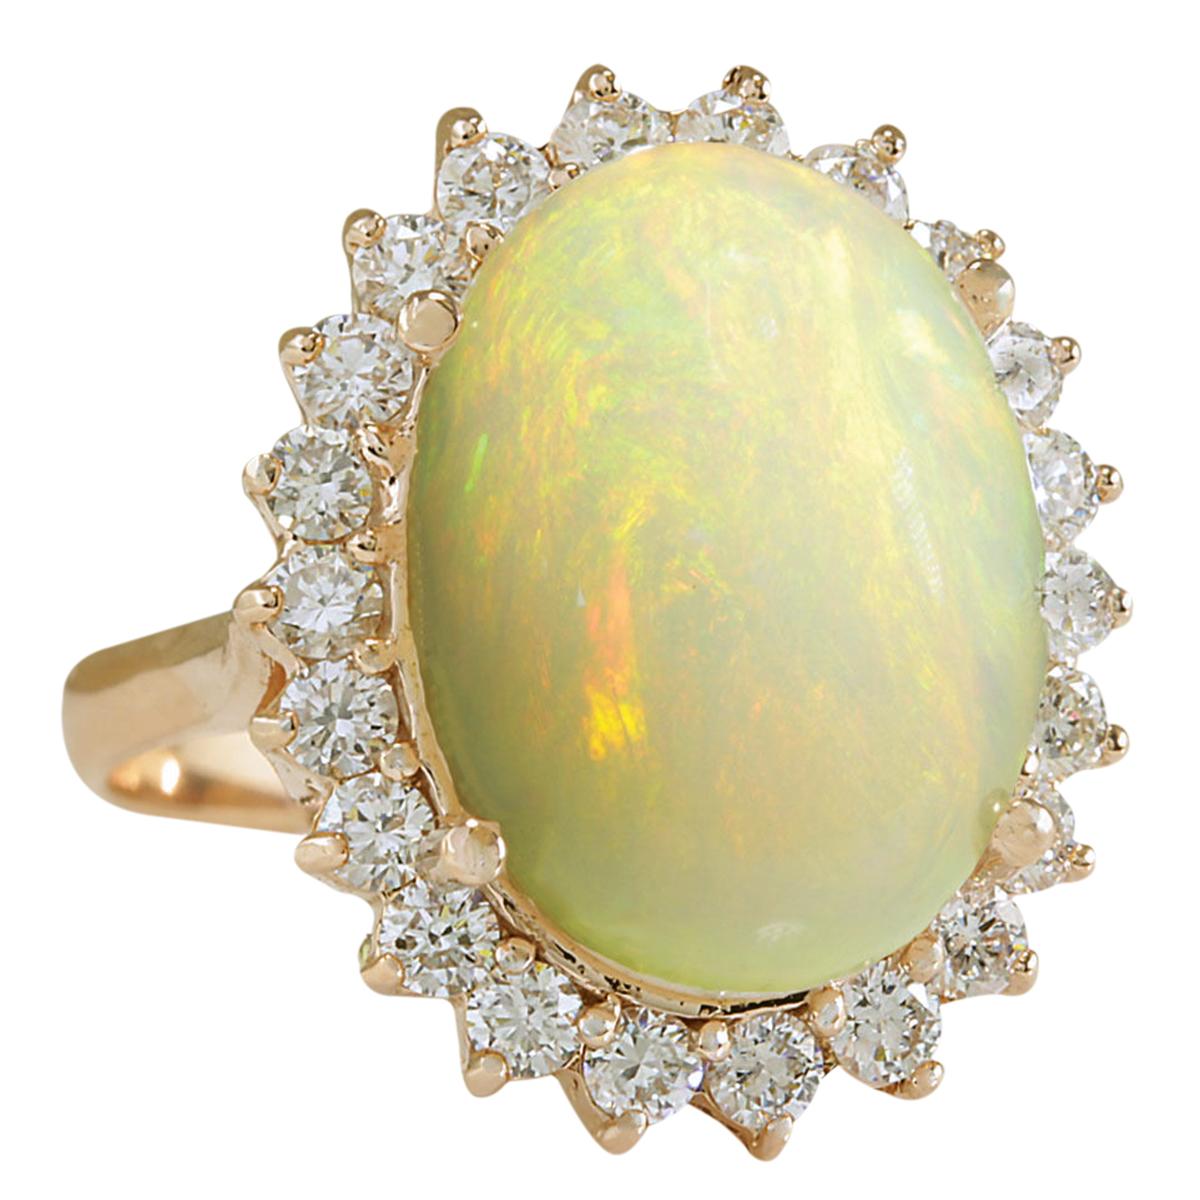 7.64 Carat Natural Opal 14 Karat Rose Gold Diamond Ring
Stamped: 14K Rose Gold
Total Ring Weight: 6.0 Grams
Total Natural Opal Weight is 6.44 Carat (Measures: 16.00x12.00 mm)
Color: Multicolor
Total Natural Diamond Weight is 1.20 Carat
Color: F-G,